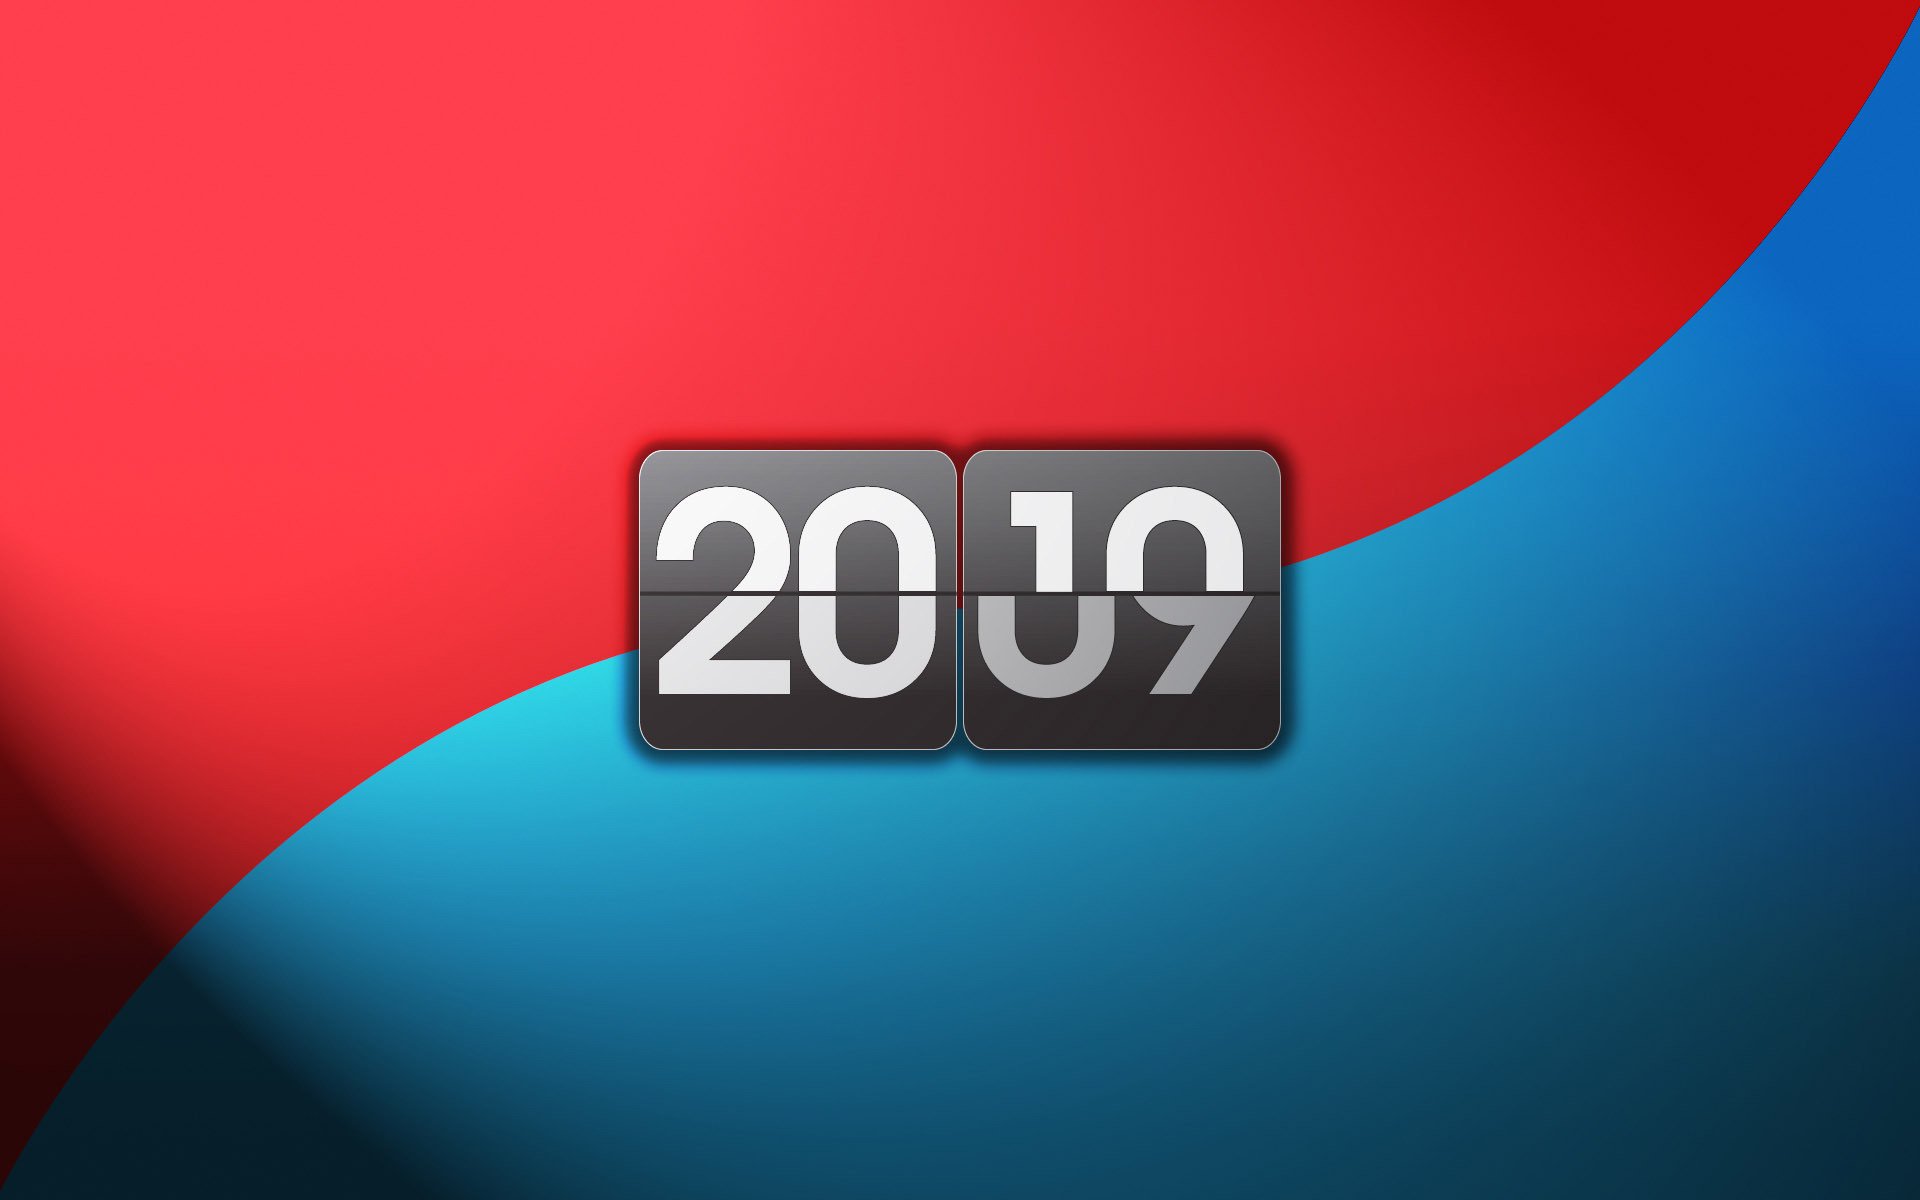 На синем красном фоне цифры 2010